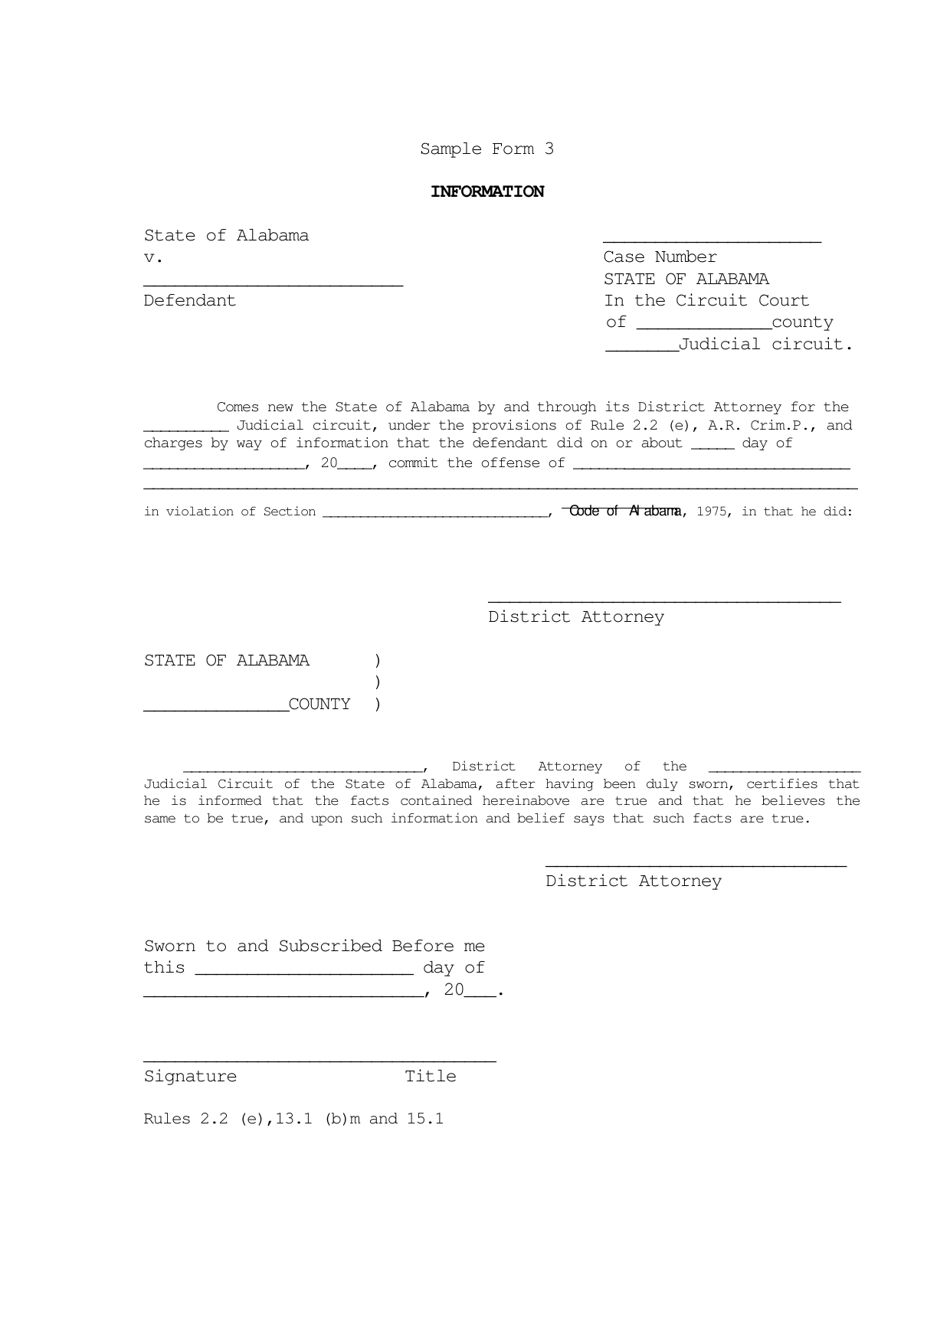 Sample Form 3 Information - Alabama, Page 1